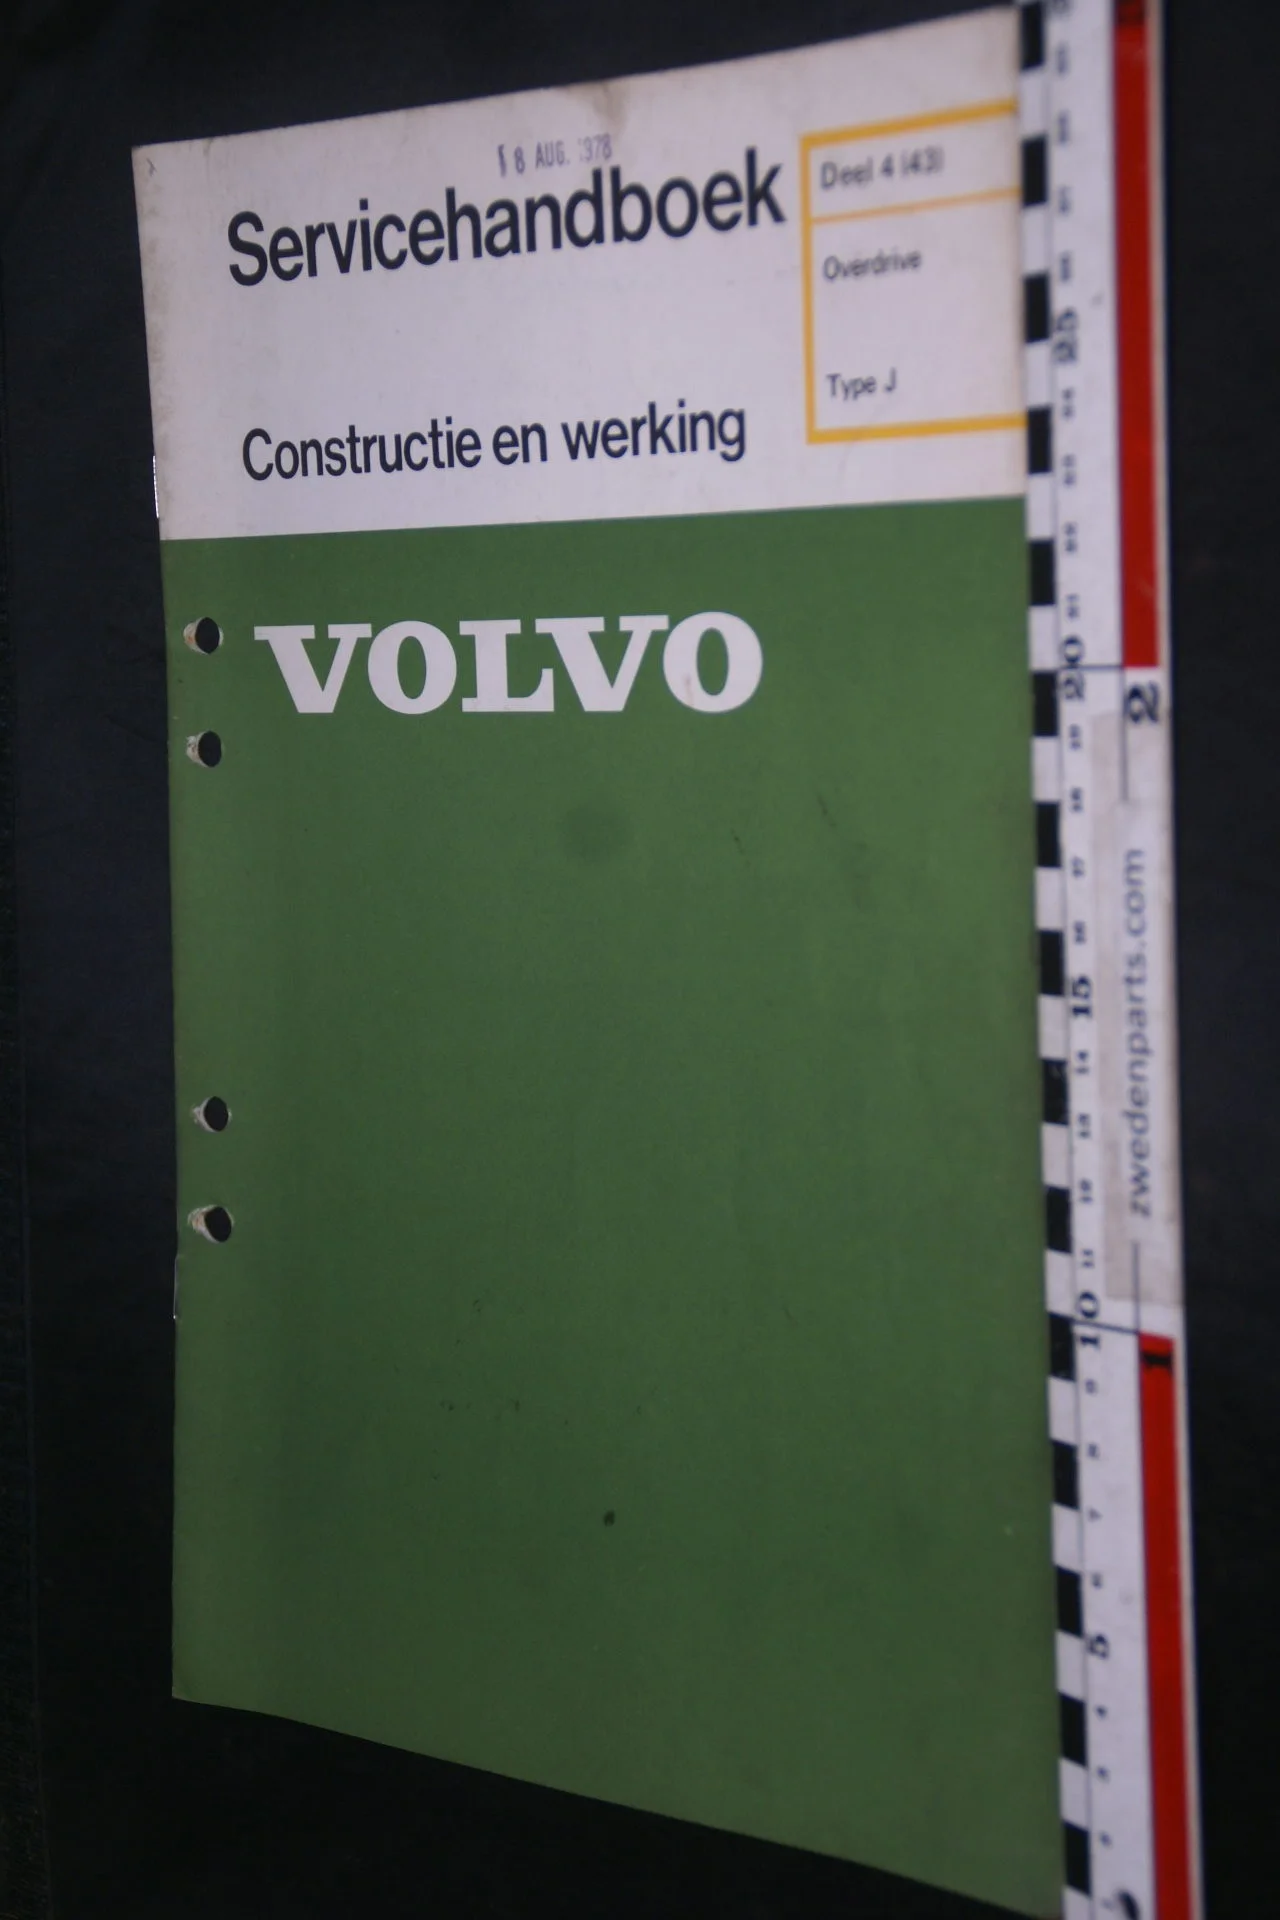 DSC08599 1978 origineel Volvo servicehandboek  4 (43) overdrive Type J 1 van 800 TP 12178